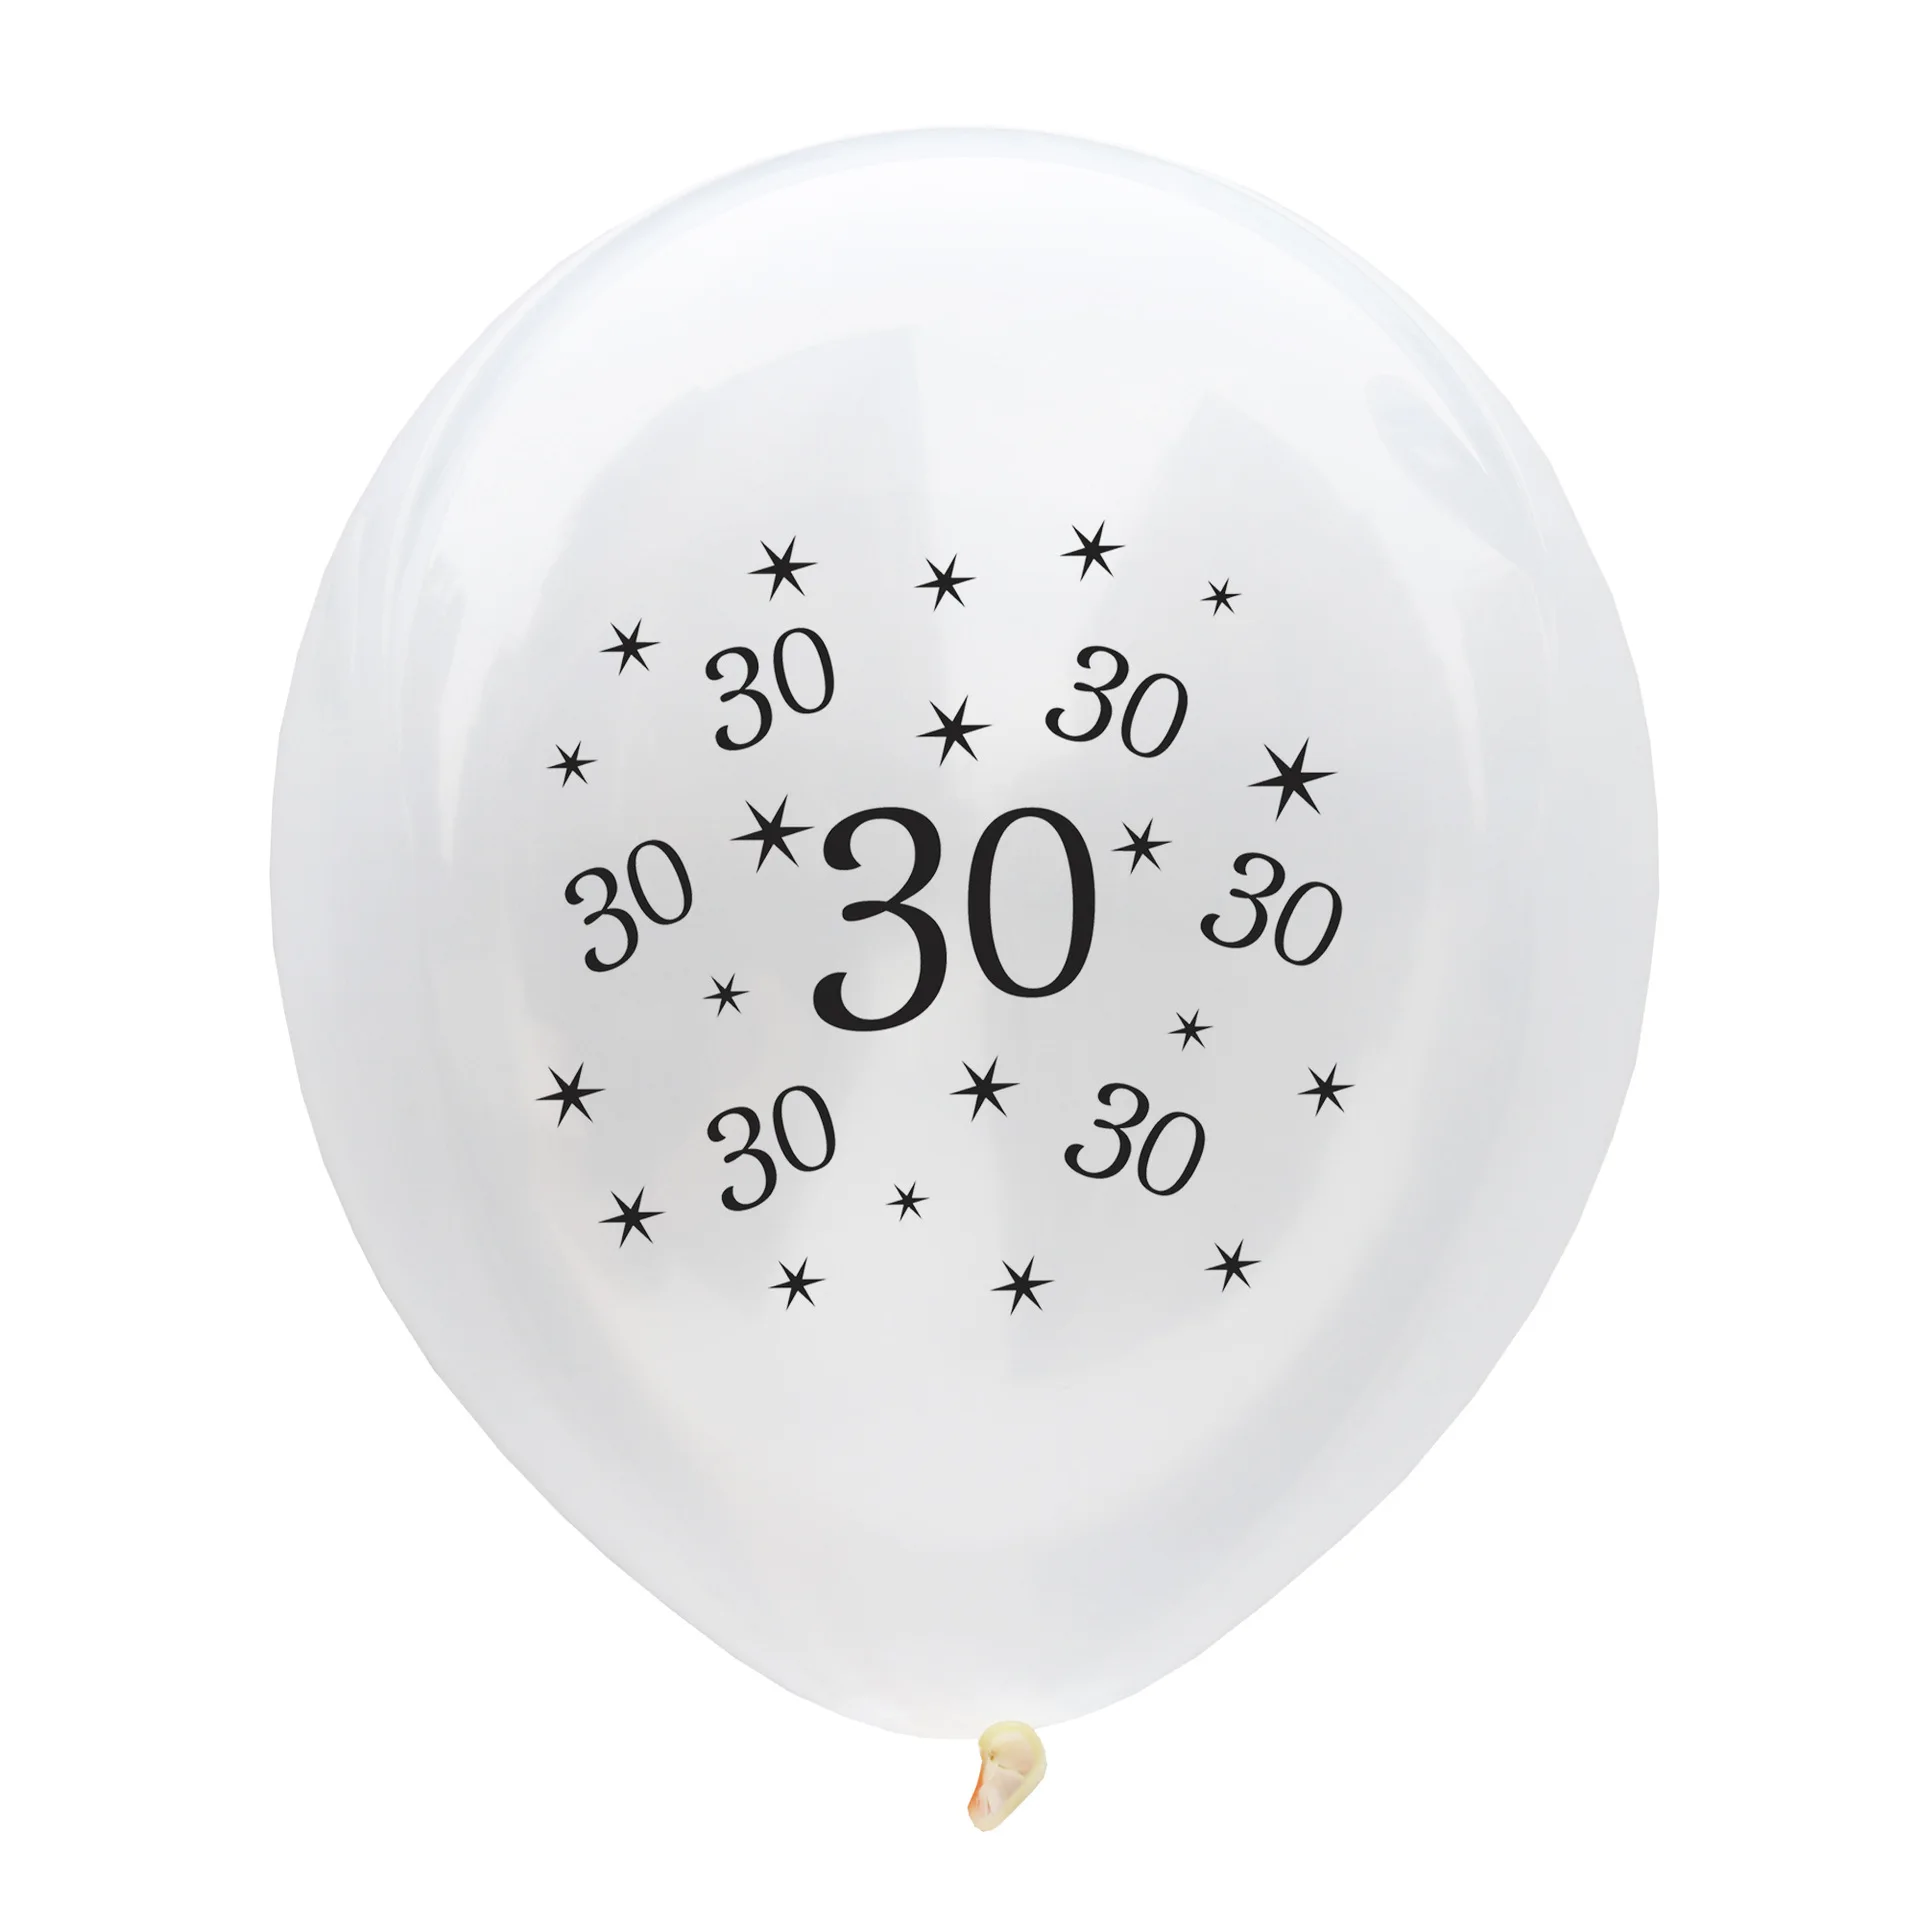 10 шт., прозрачные воздушные шары для возраста 18, 21, 30, 40, 50, 60 лет, праздничные украшения для дня рождения, прозрачные воздушные шары с гелием для взрослых - Цвет: 2-30